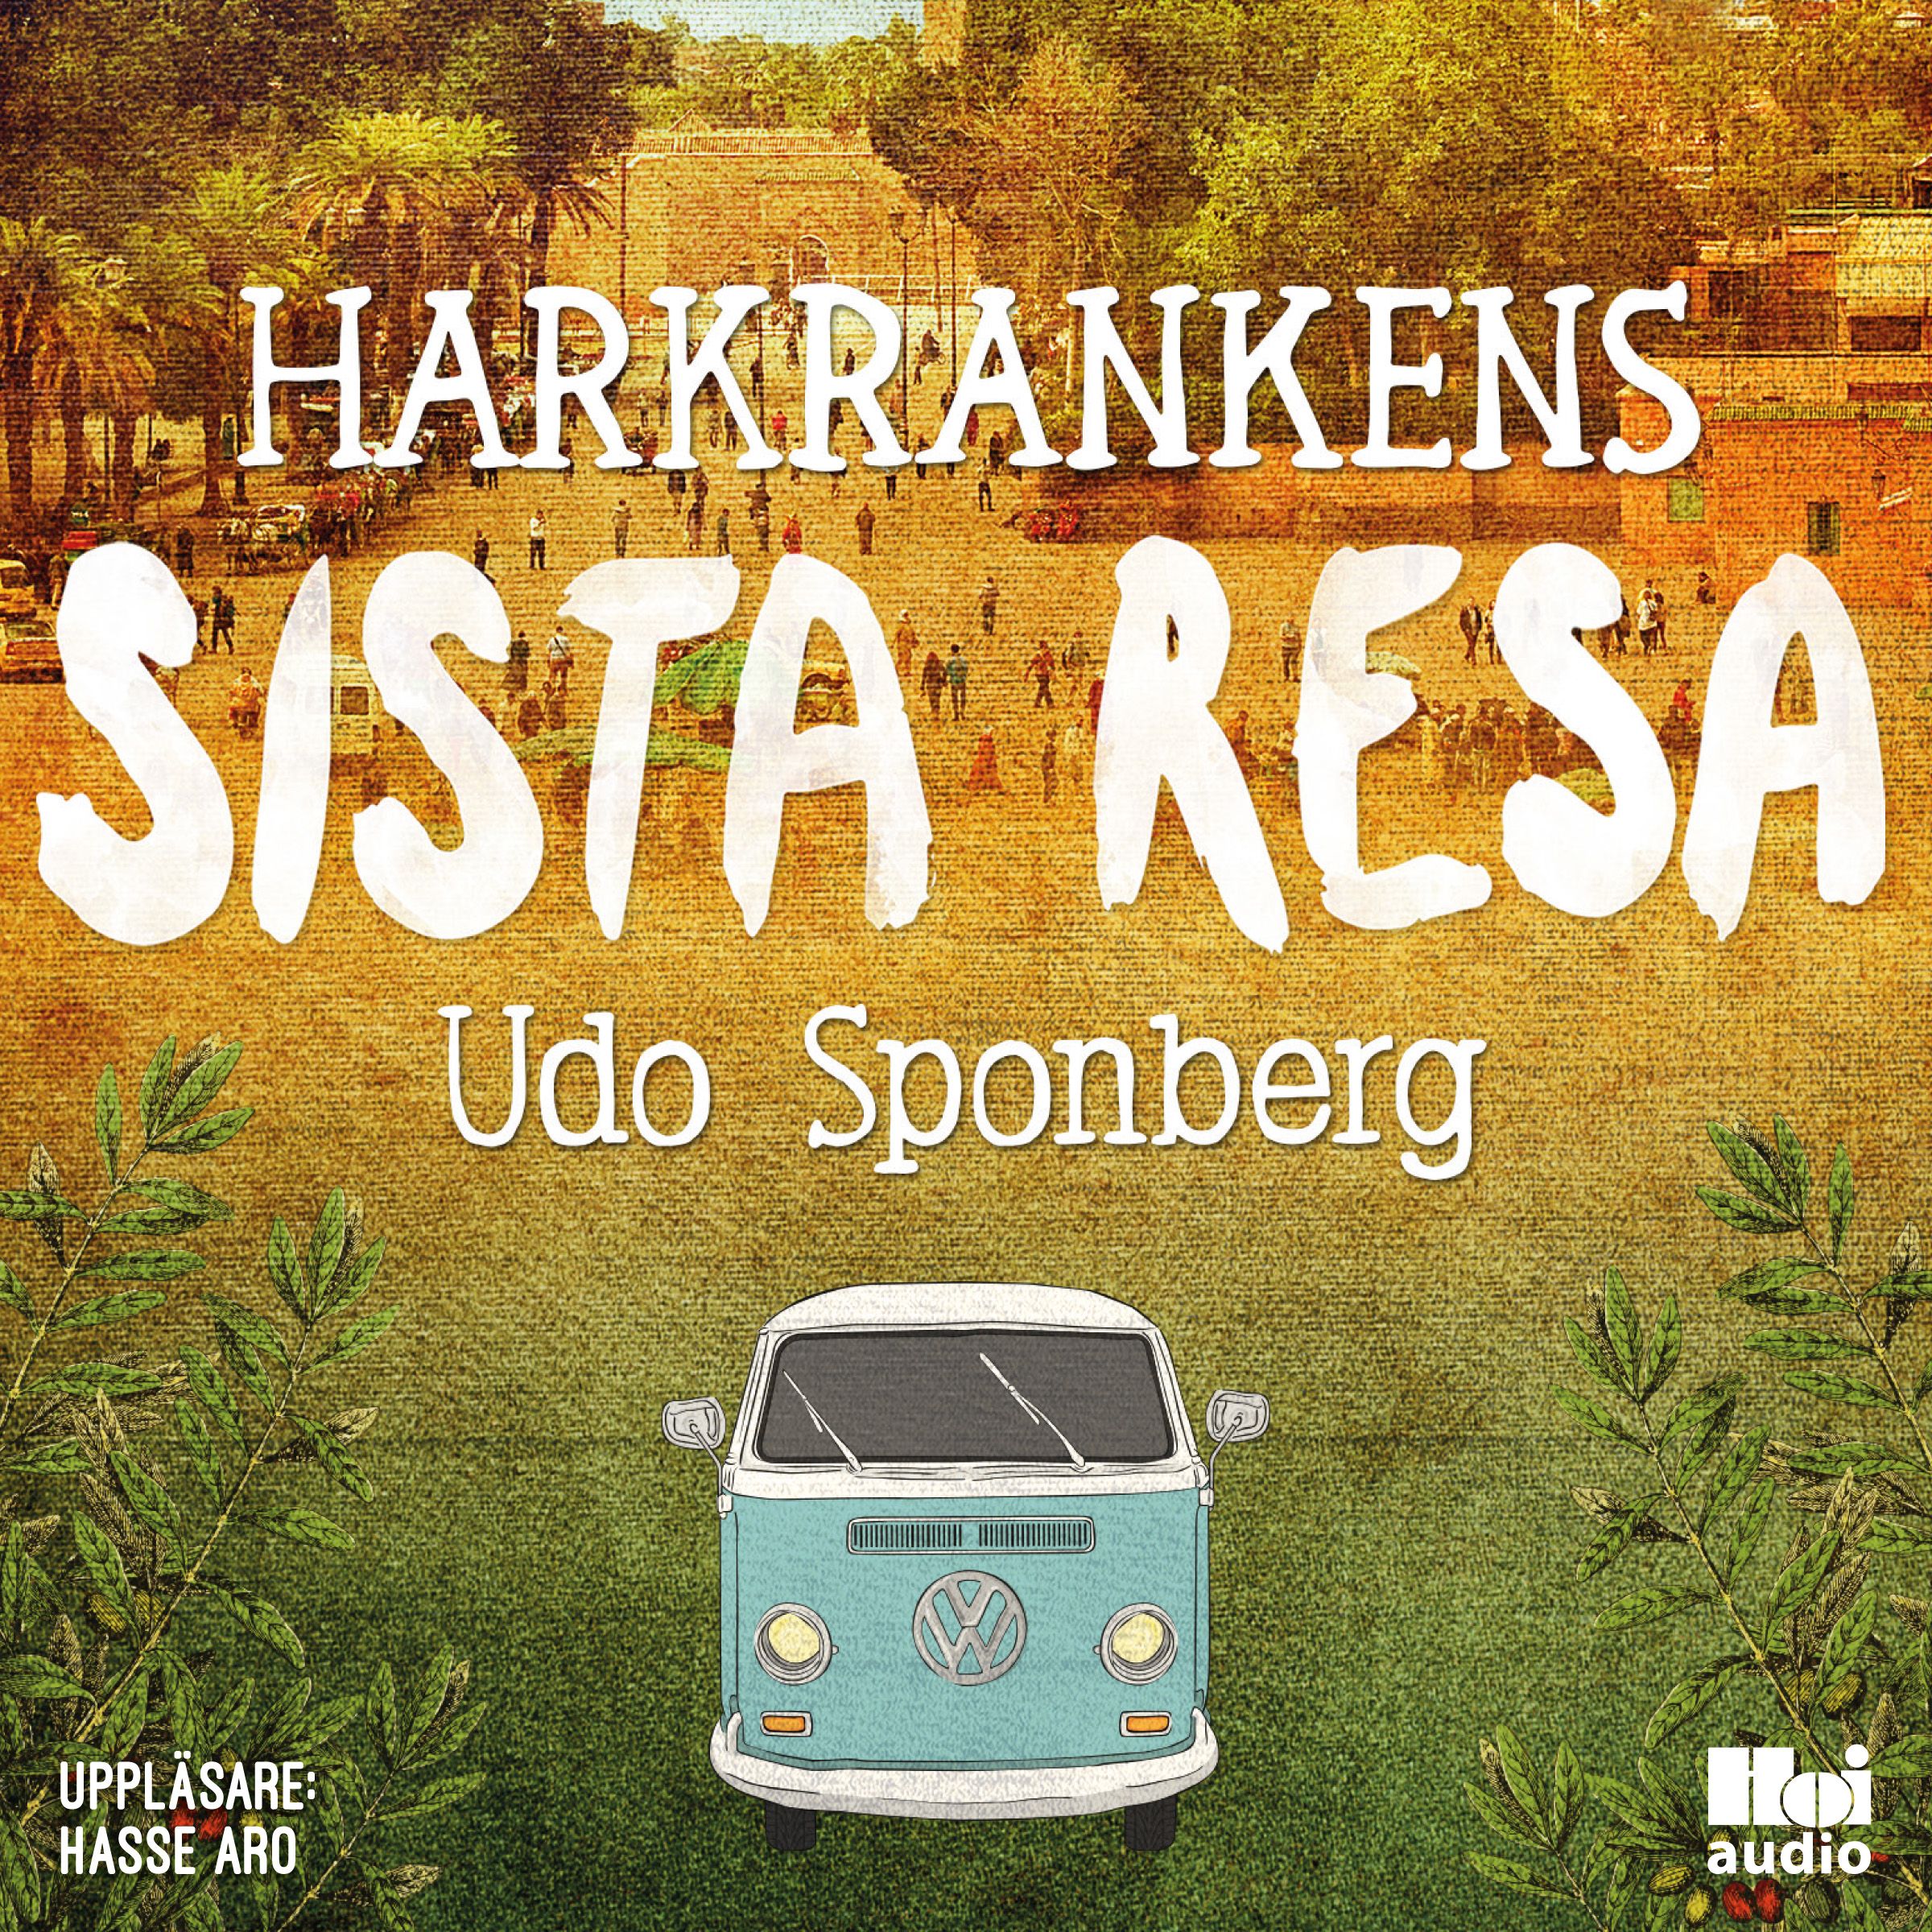 Harkrankens sista resa, ljudbok av Udo Sponberg